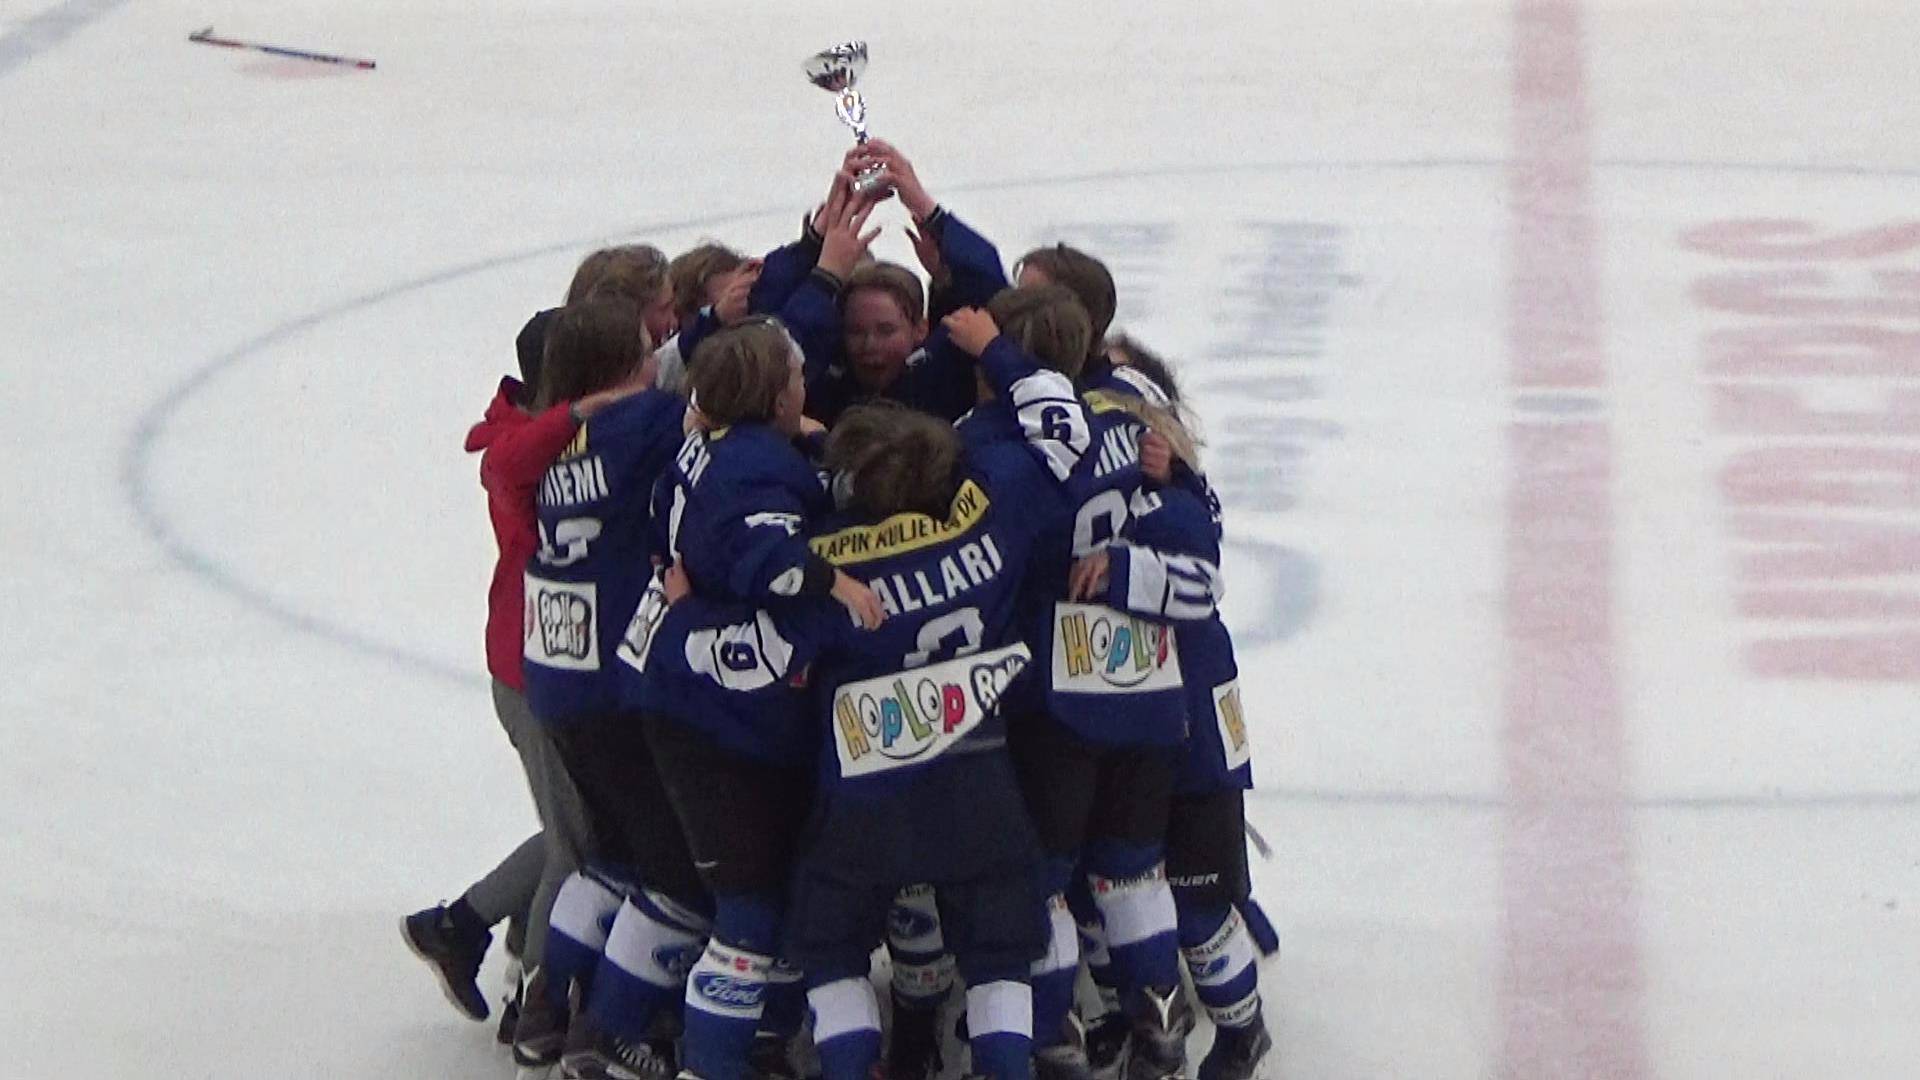 RoKi -03 Övertorneån Larsson Glas Cupin voittoon